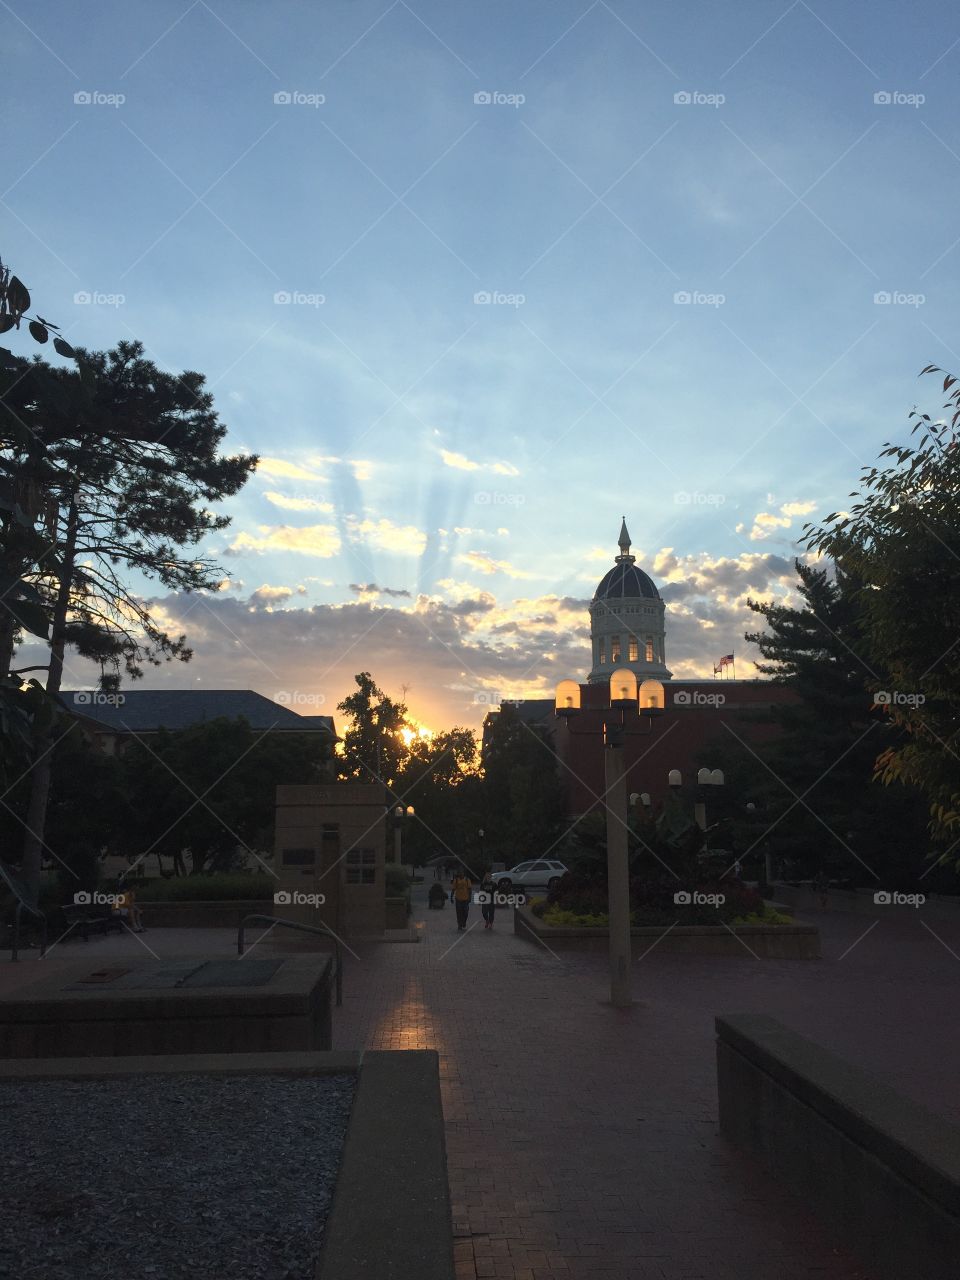 Collegiate sunset